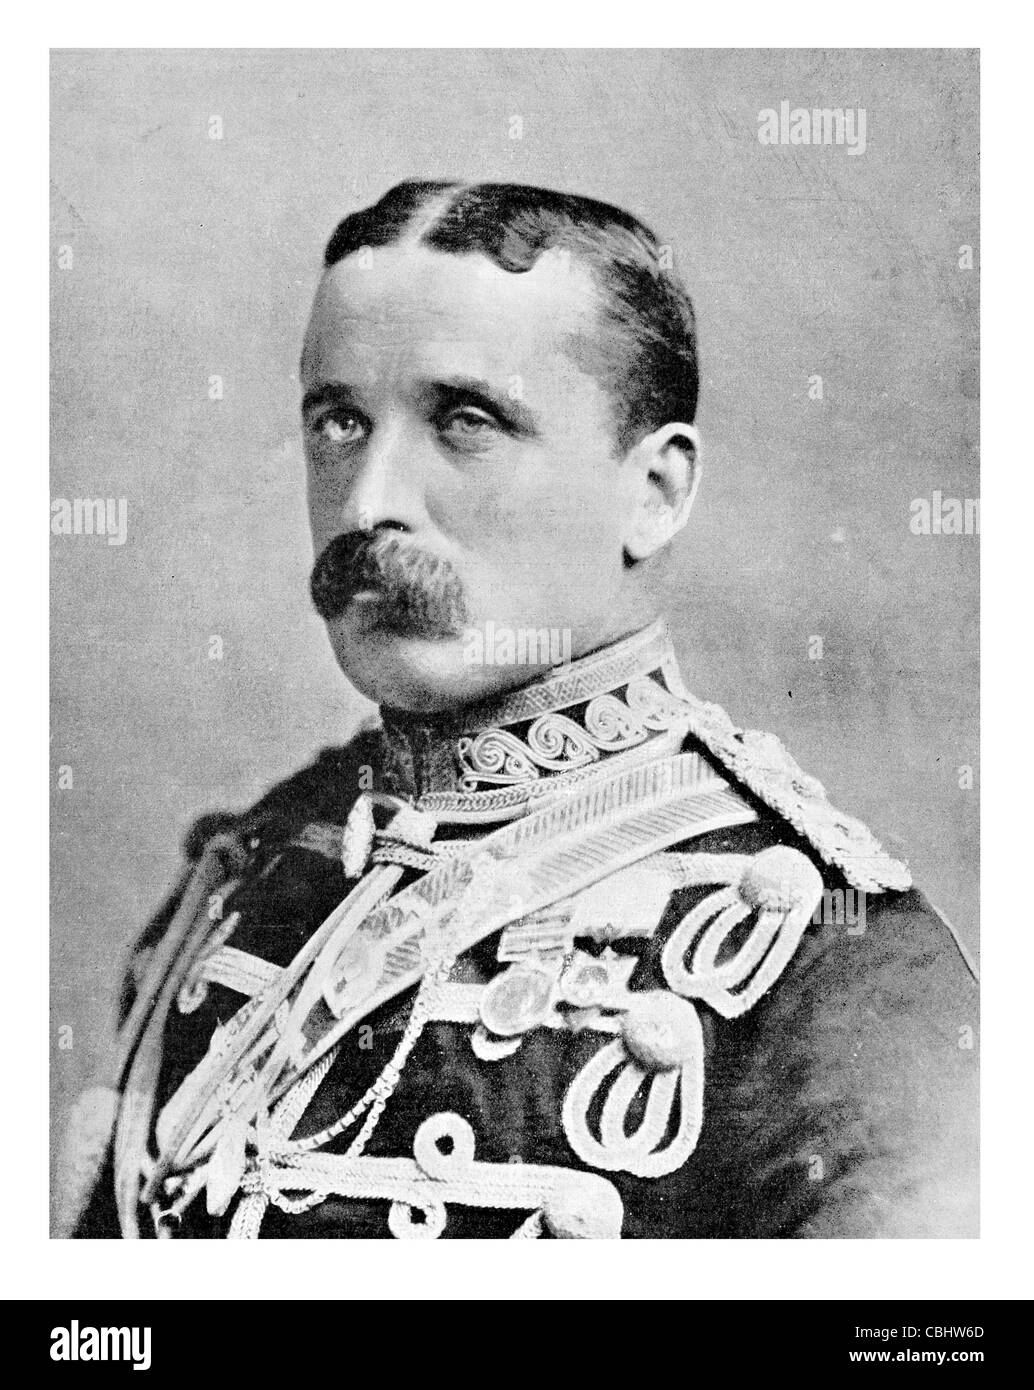 Esercito di anticipo Lieut generale feldmaresciallo Frederick Sleigh Roberts primo Earl 1832 1914 soldato britannico comandante in capo Foto Stock